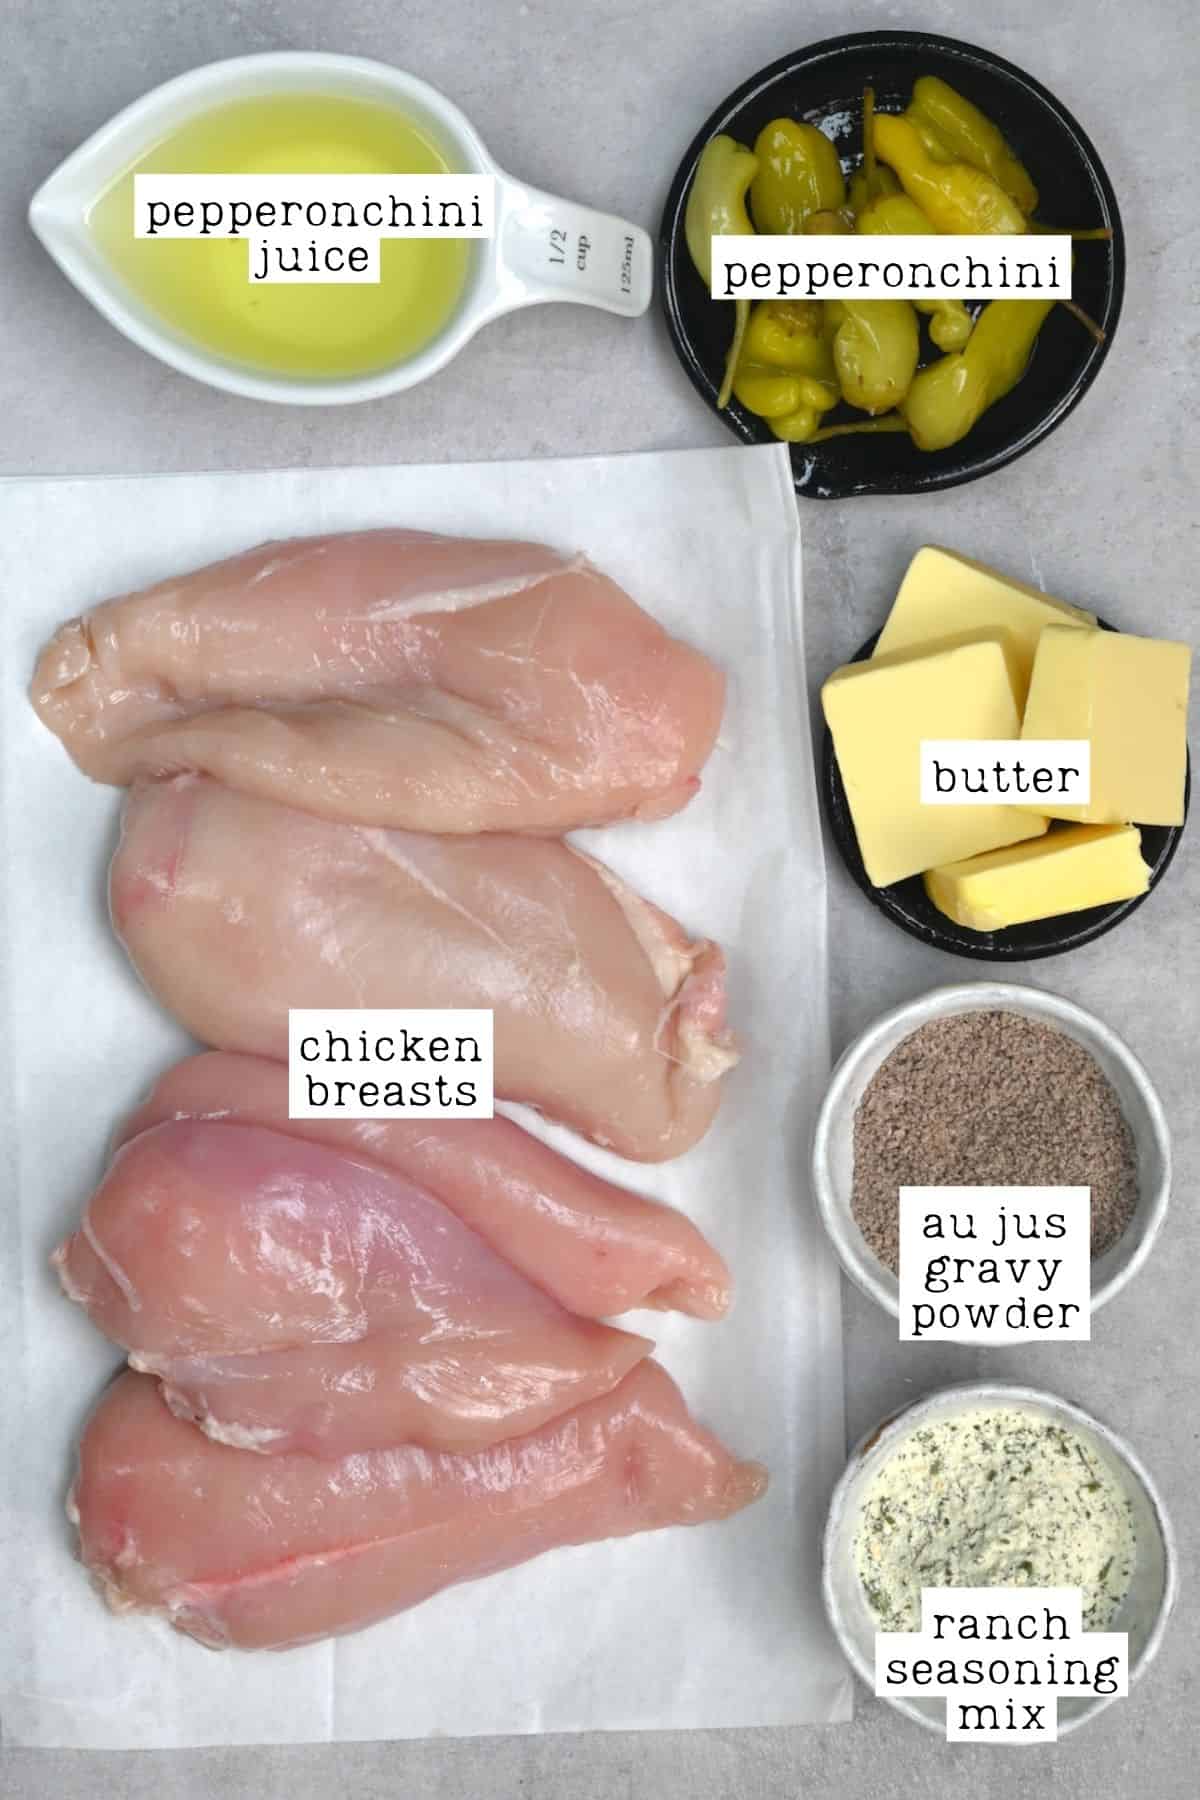 Ingredients for Mississippi chicken